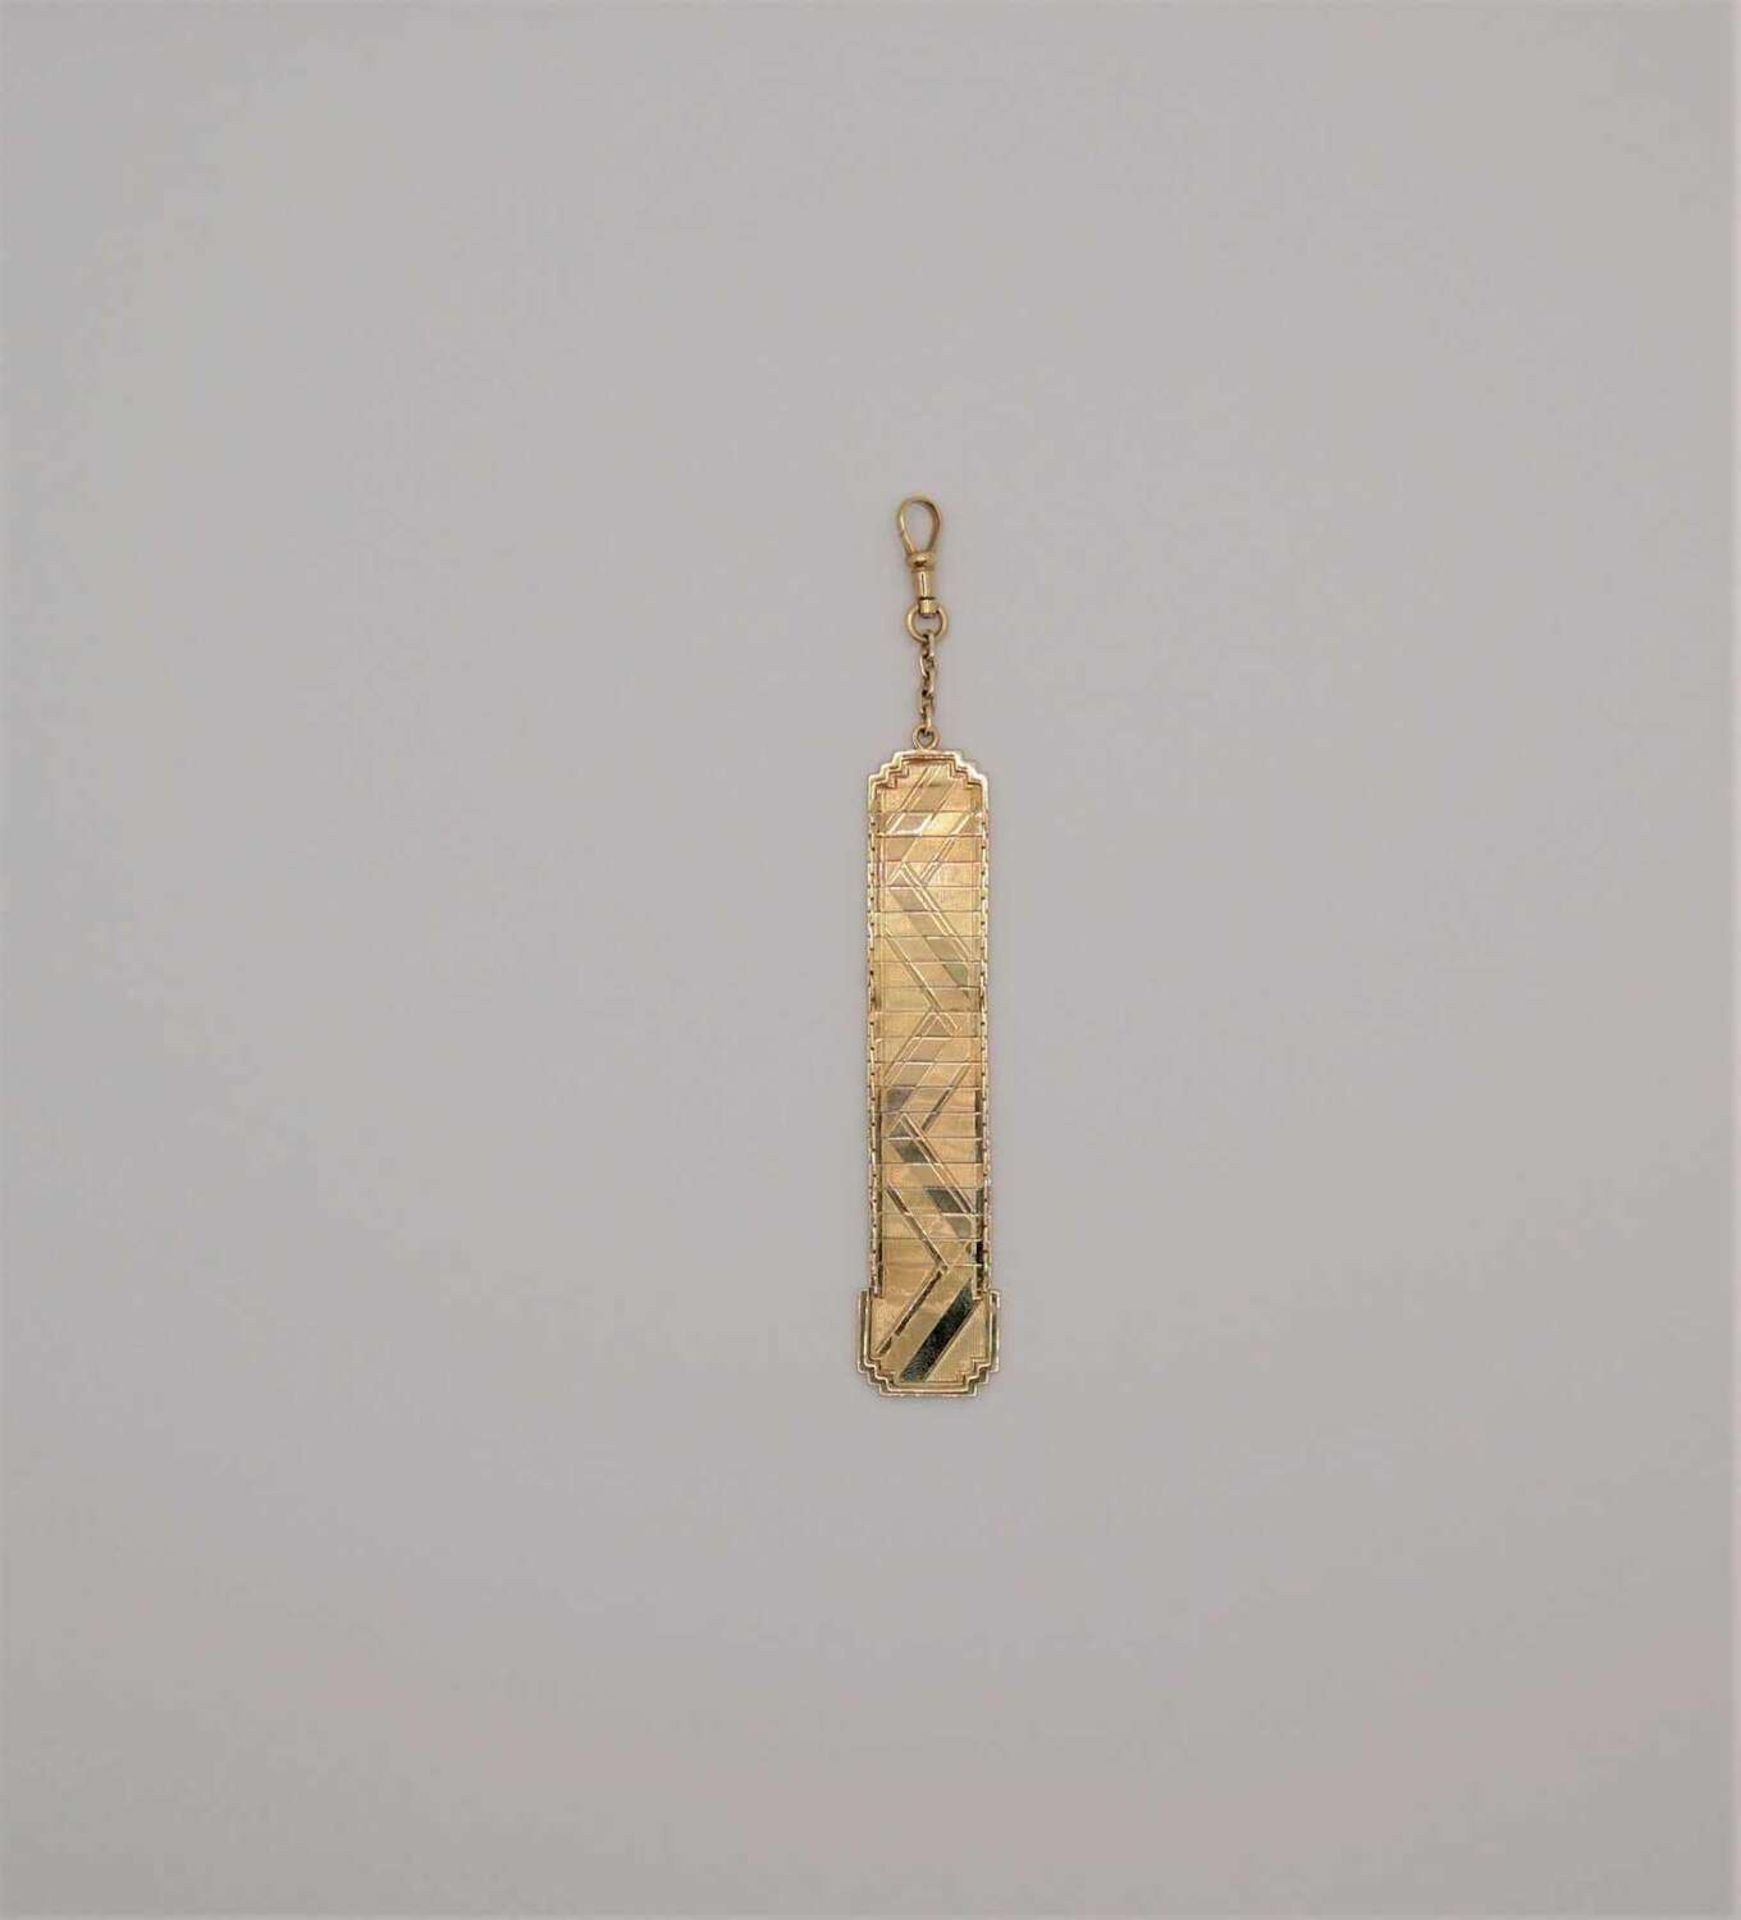 1 goldener Bierzipfel 14ct, geprüft im Original Etui, Gesamtlänge ca 11,5cm, Gewicht ca 9,63g. , - Bild 2 aus 4